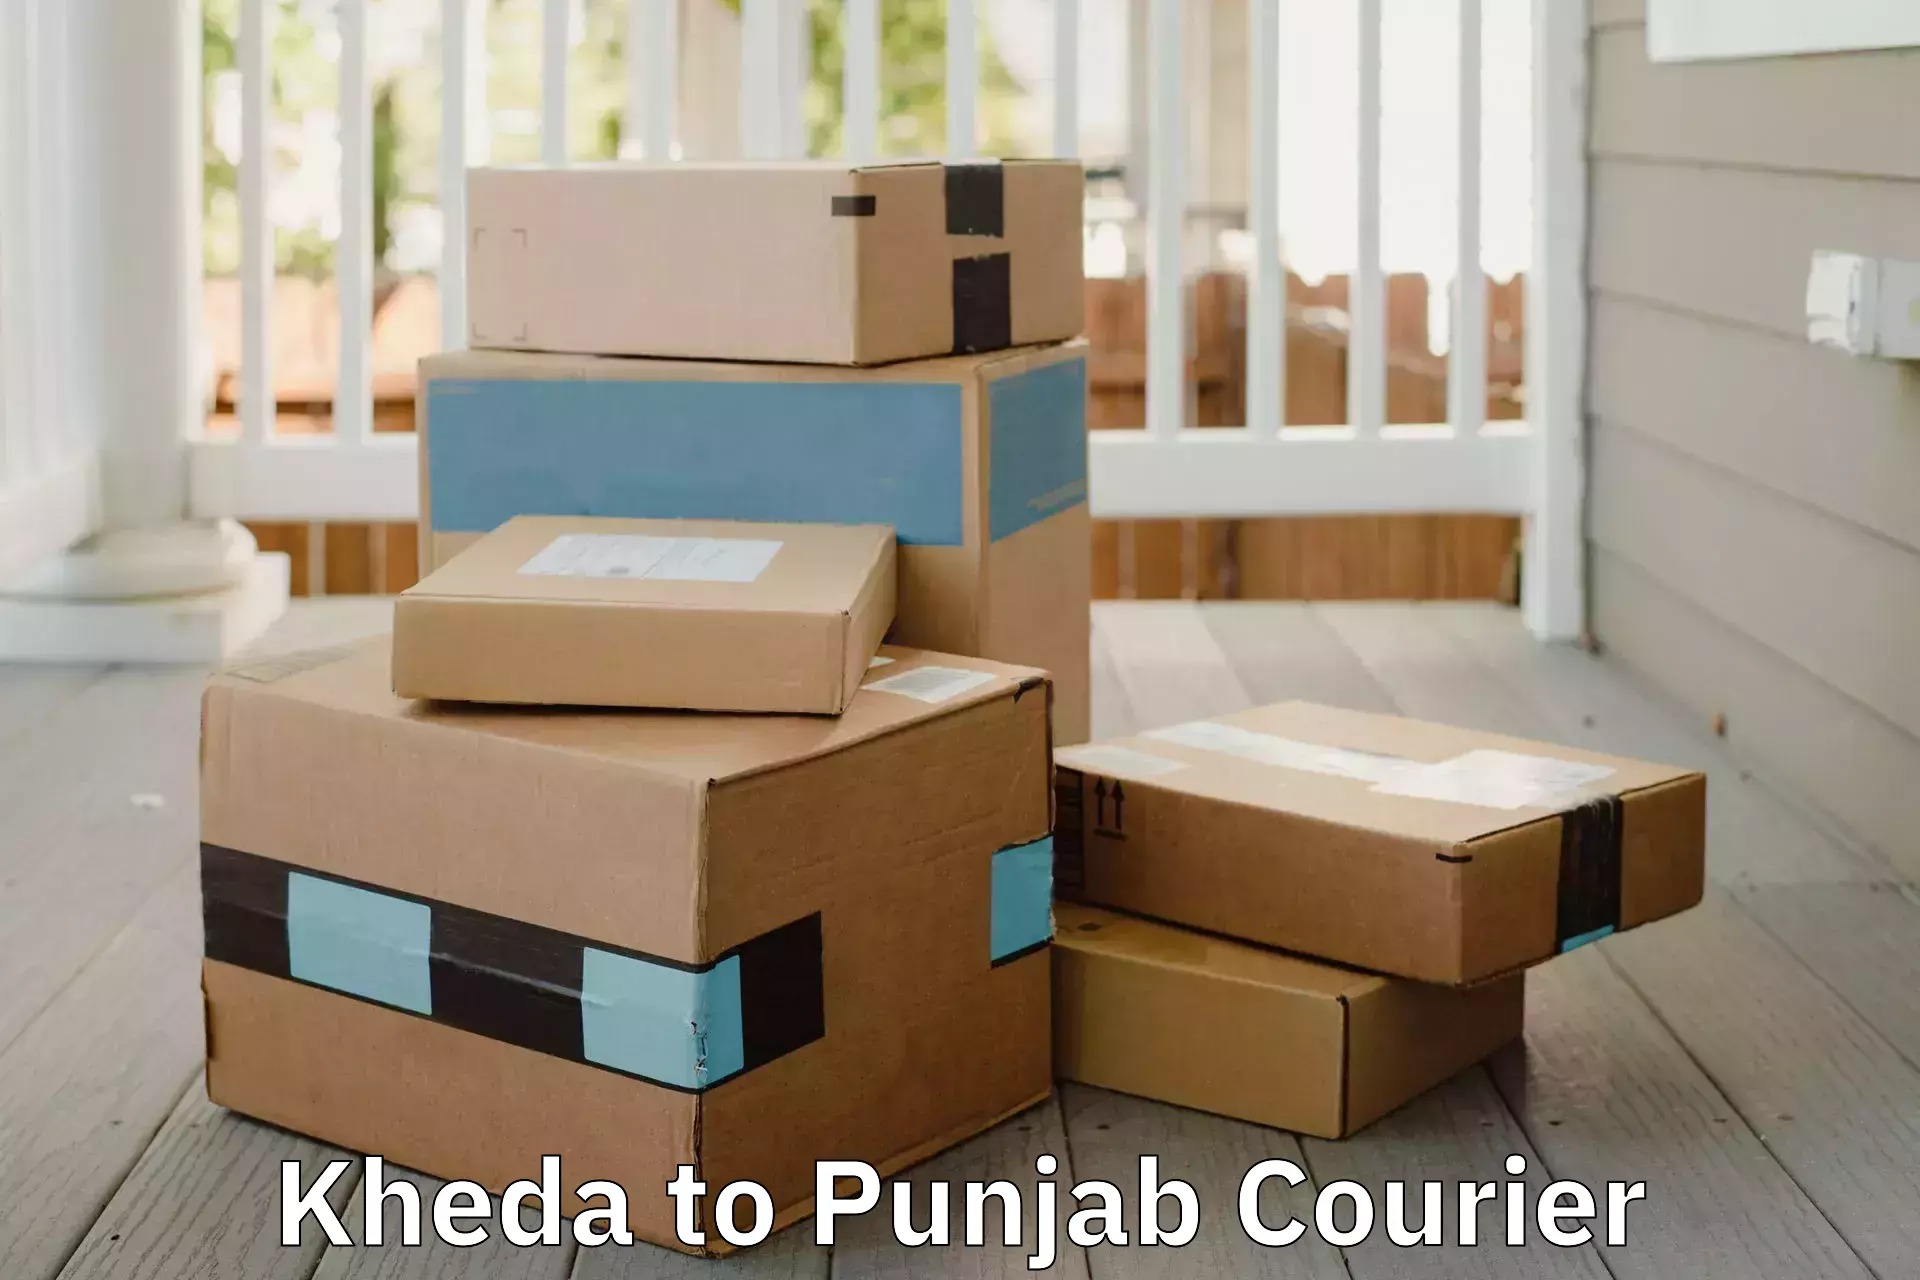 Furniture moving assistance Kheda to Punjab